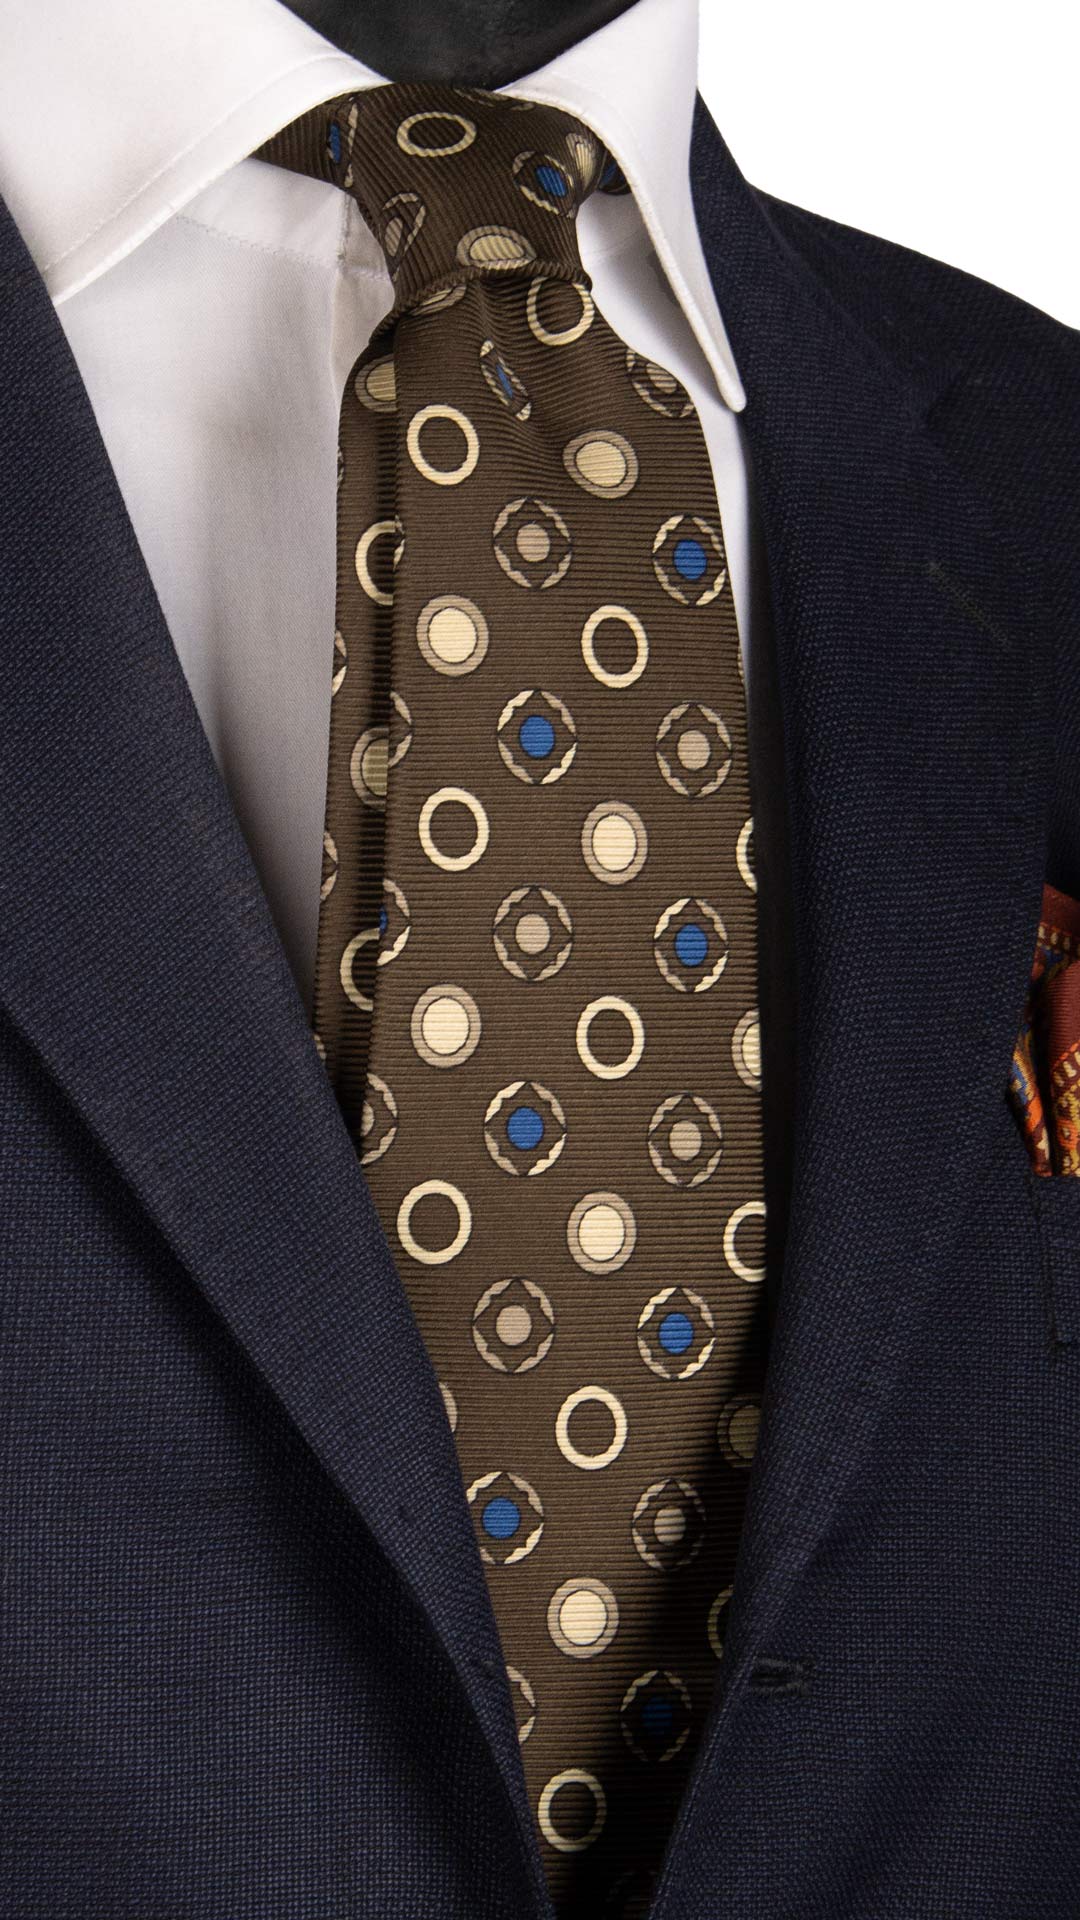 Cravatta Vintage in Saia di Seta Marrone Fantasia Blu Avorio Color Corda CV815 Made in Italy Graffeo Cravatte